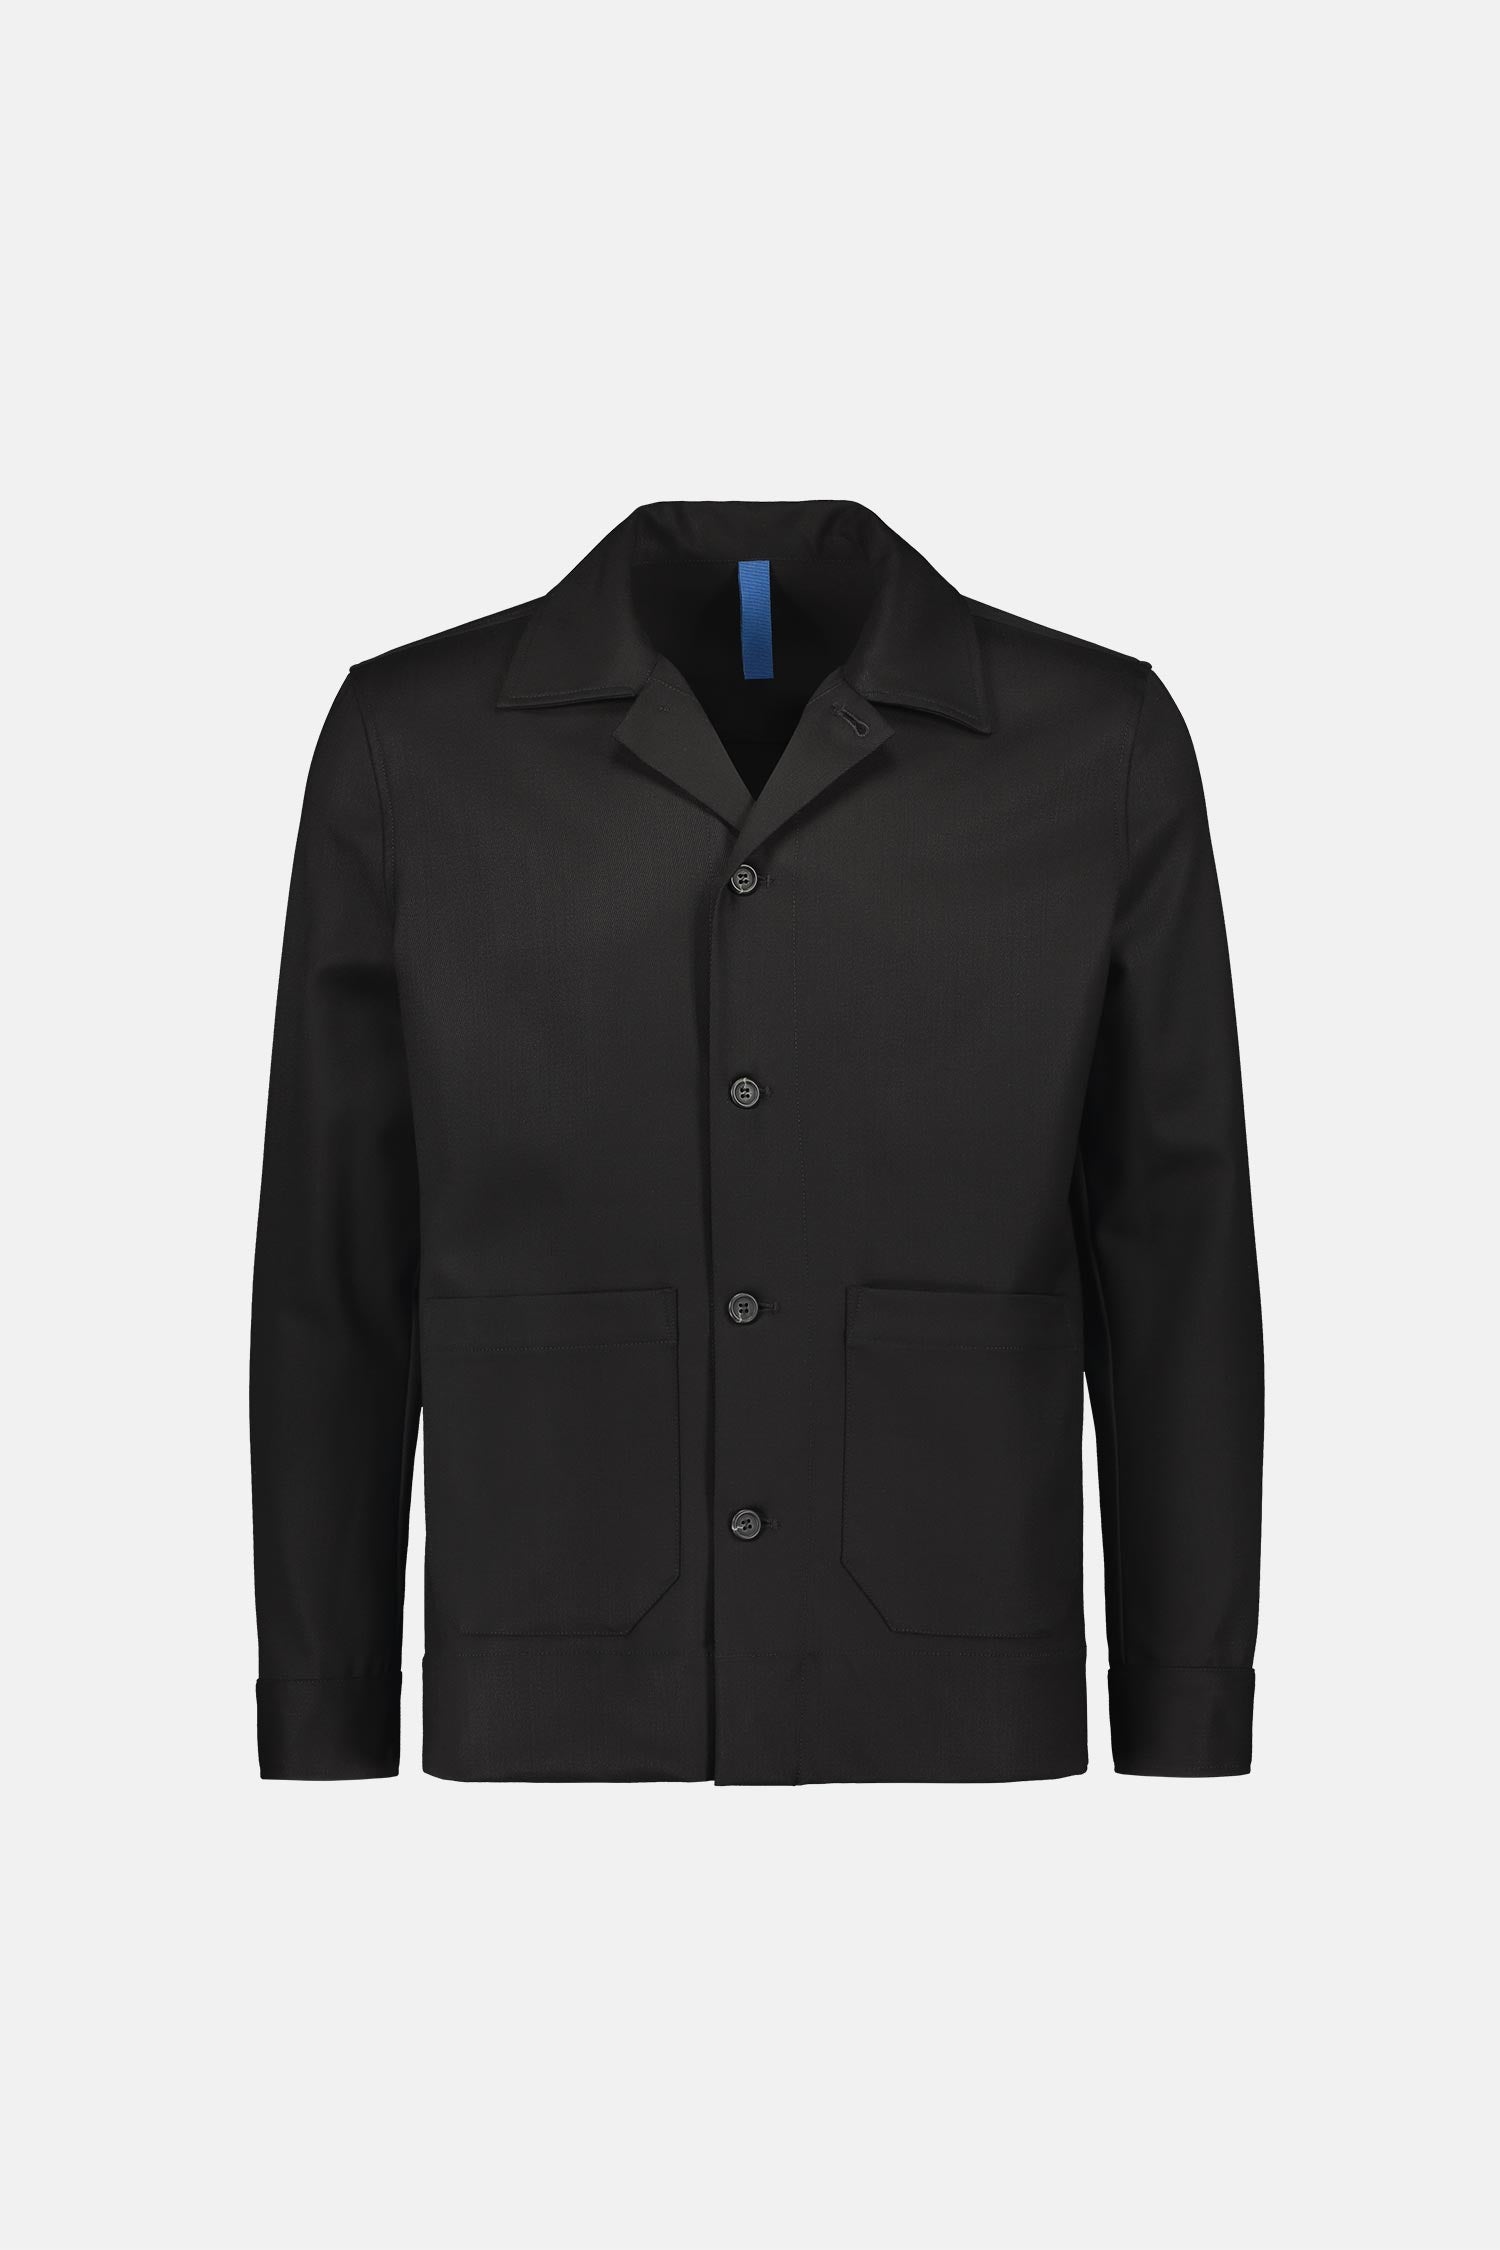 Frenn Jesse sustainable premium quality machine washable wool overshirt black